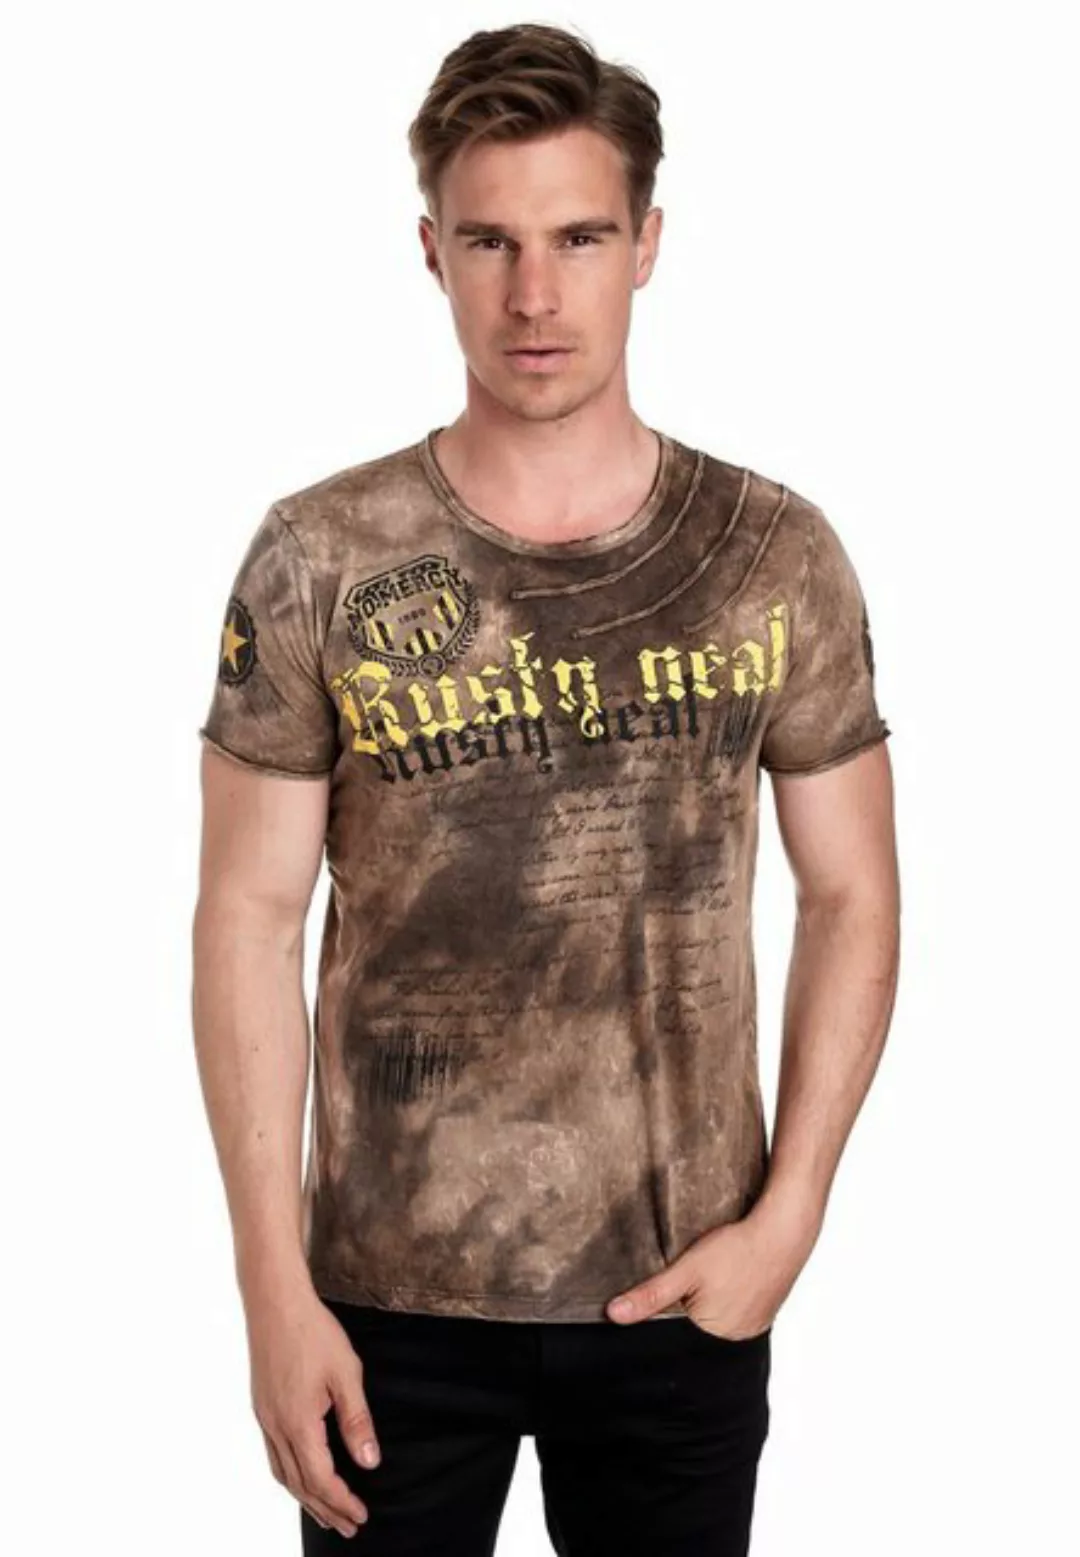 Rusty Neal T-Shirt im auffälligen Design günstig online kaufen